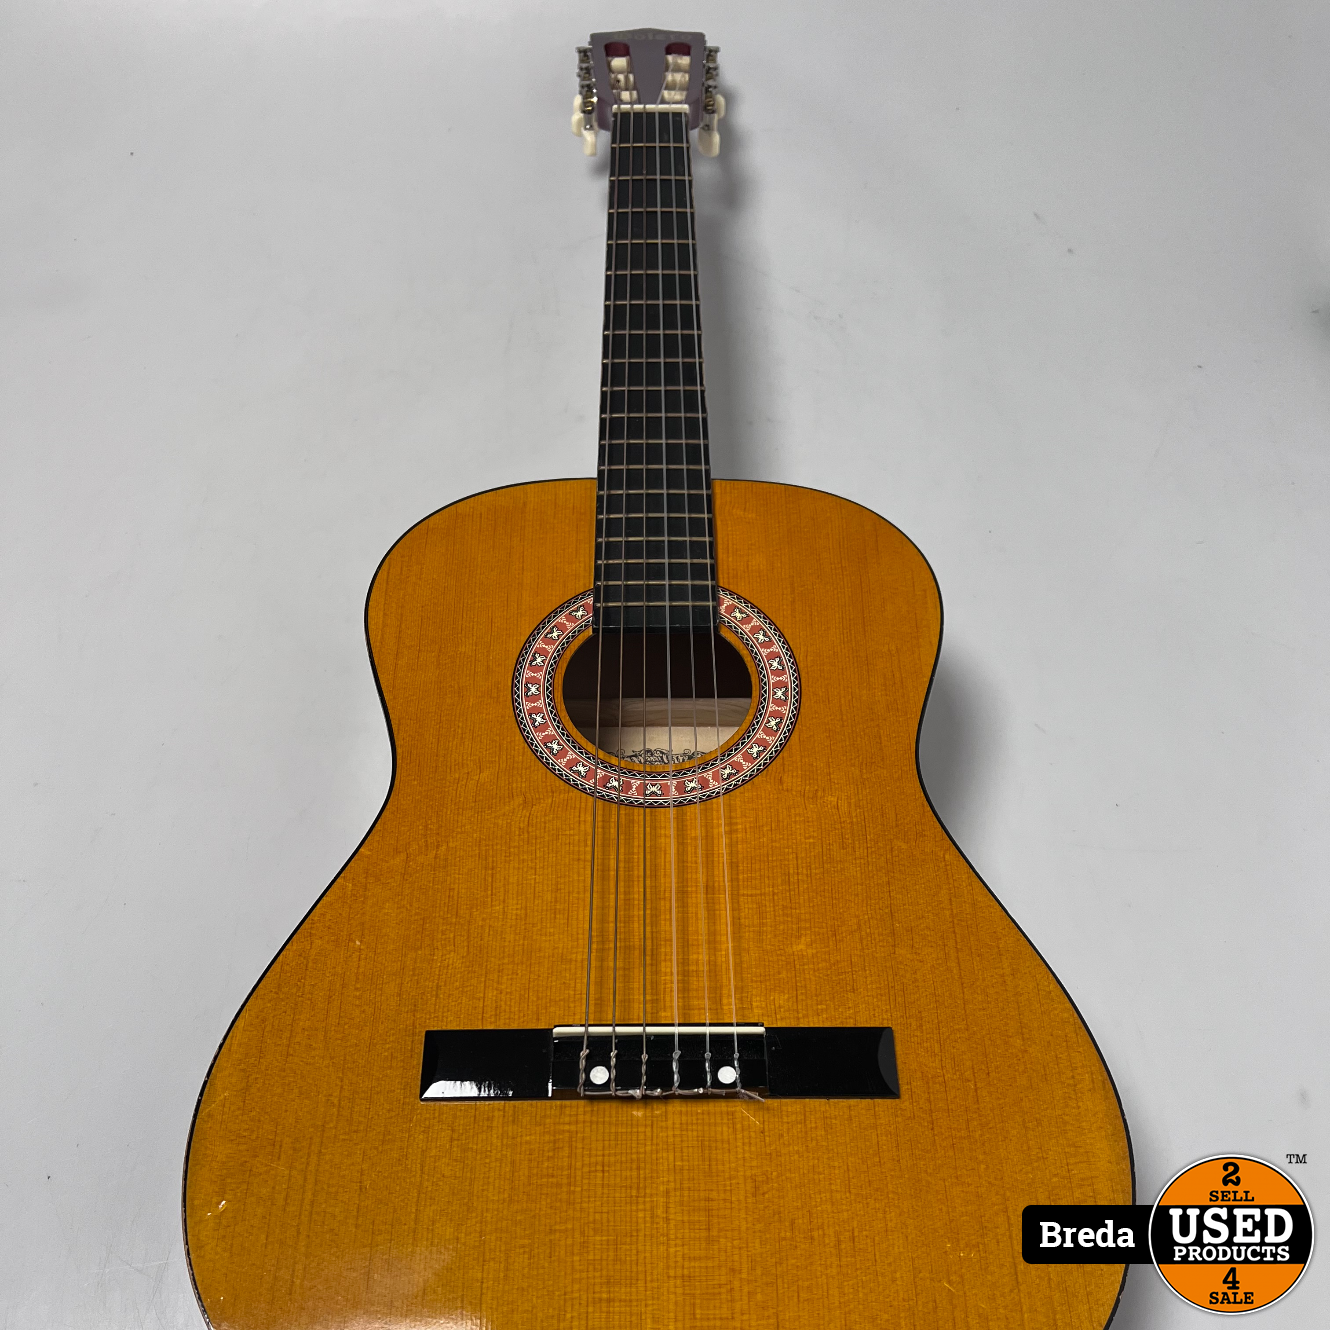 noorden voorkant zien Bolero C75 akoestische gitaar | Nette staat | Met garantie - Used Products  Breda